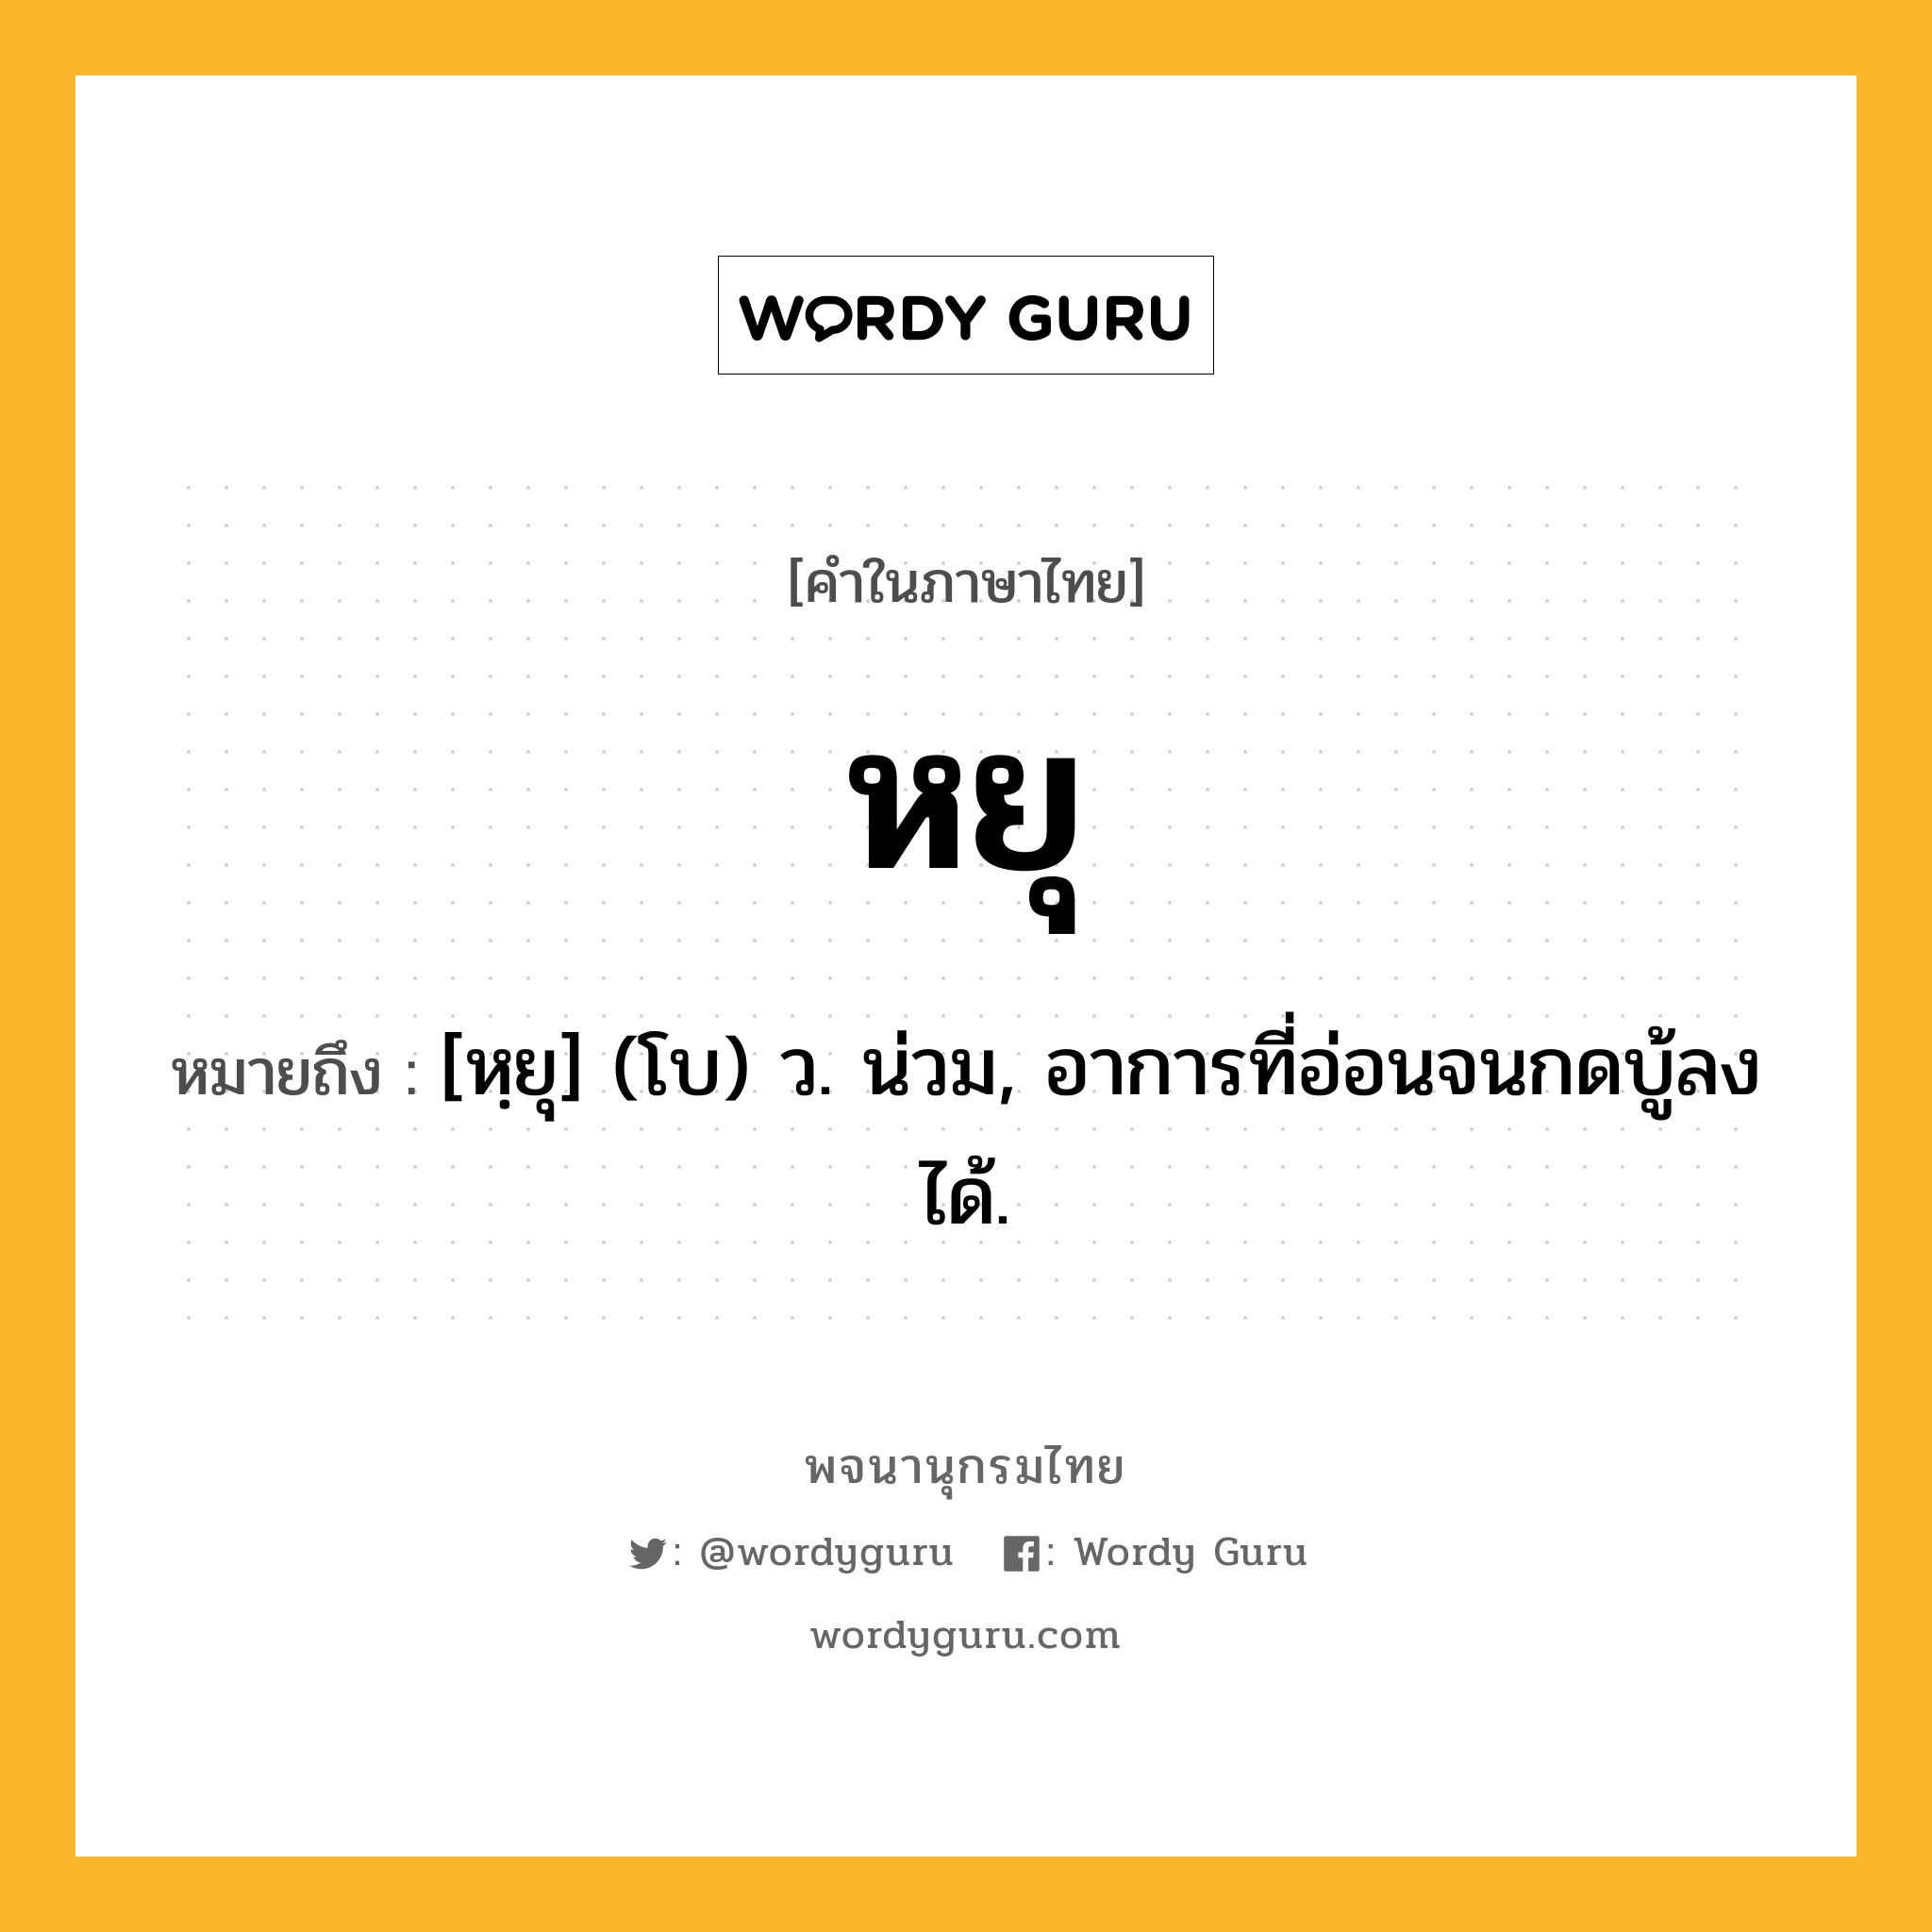 หยุ ความหมาย หมายถึงอะไร?, คำในภาษาไทย หยุ หมายถึง [หฺยุ] (โบ) ว. น่วม, อาการที่อ่อนจนกดบู้ลงได้.